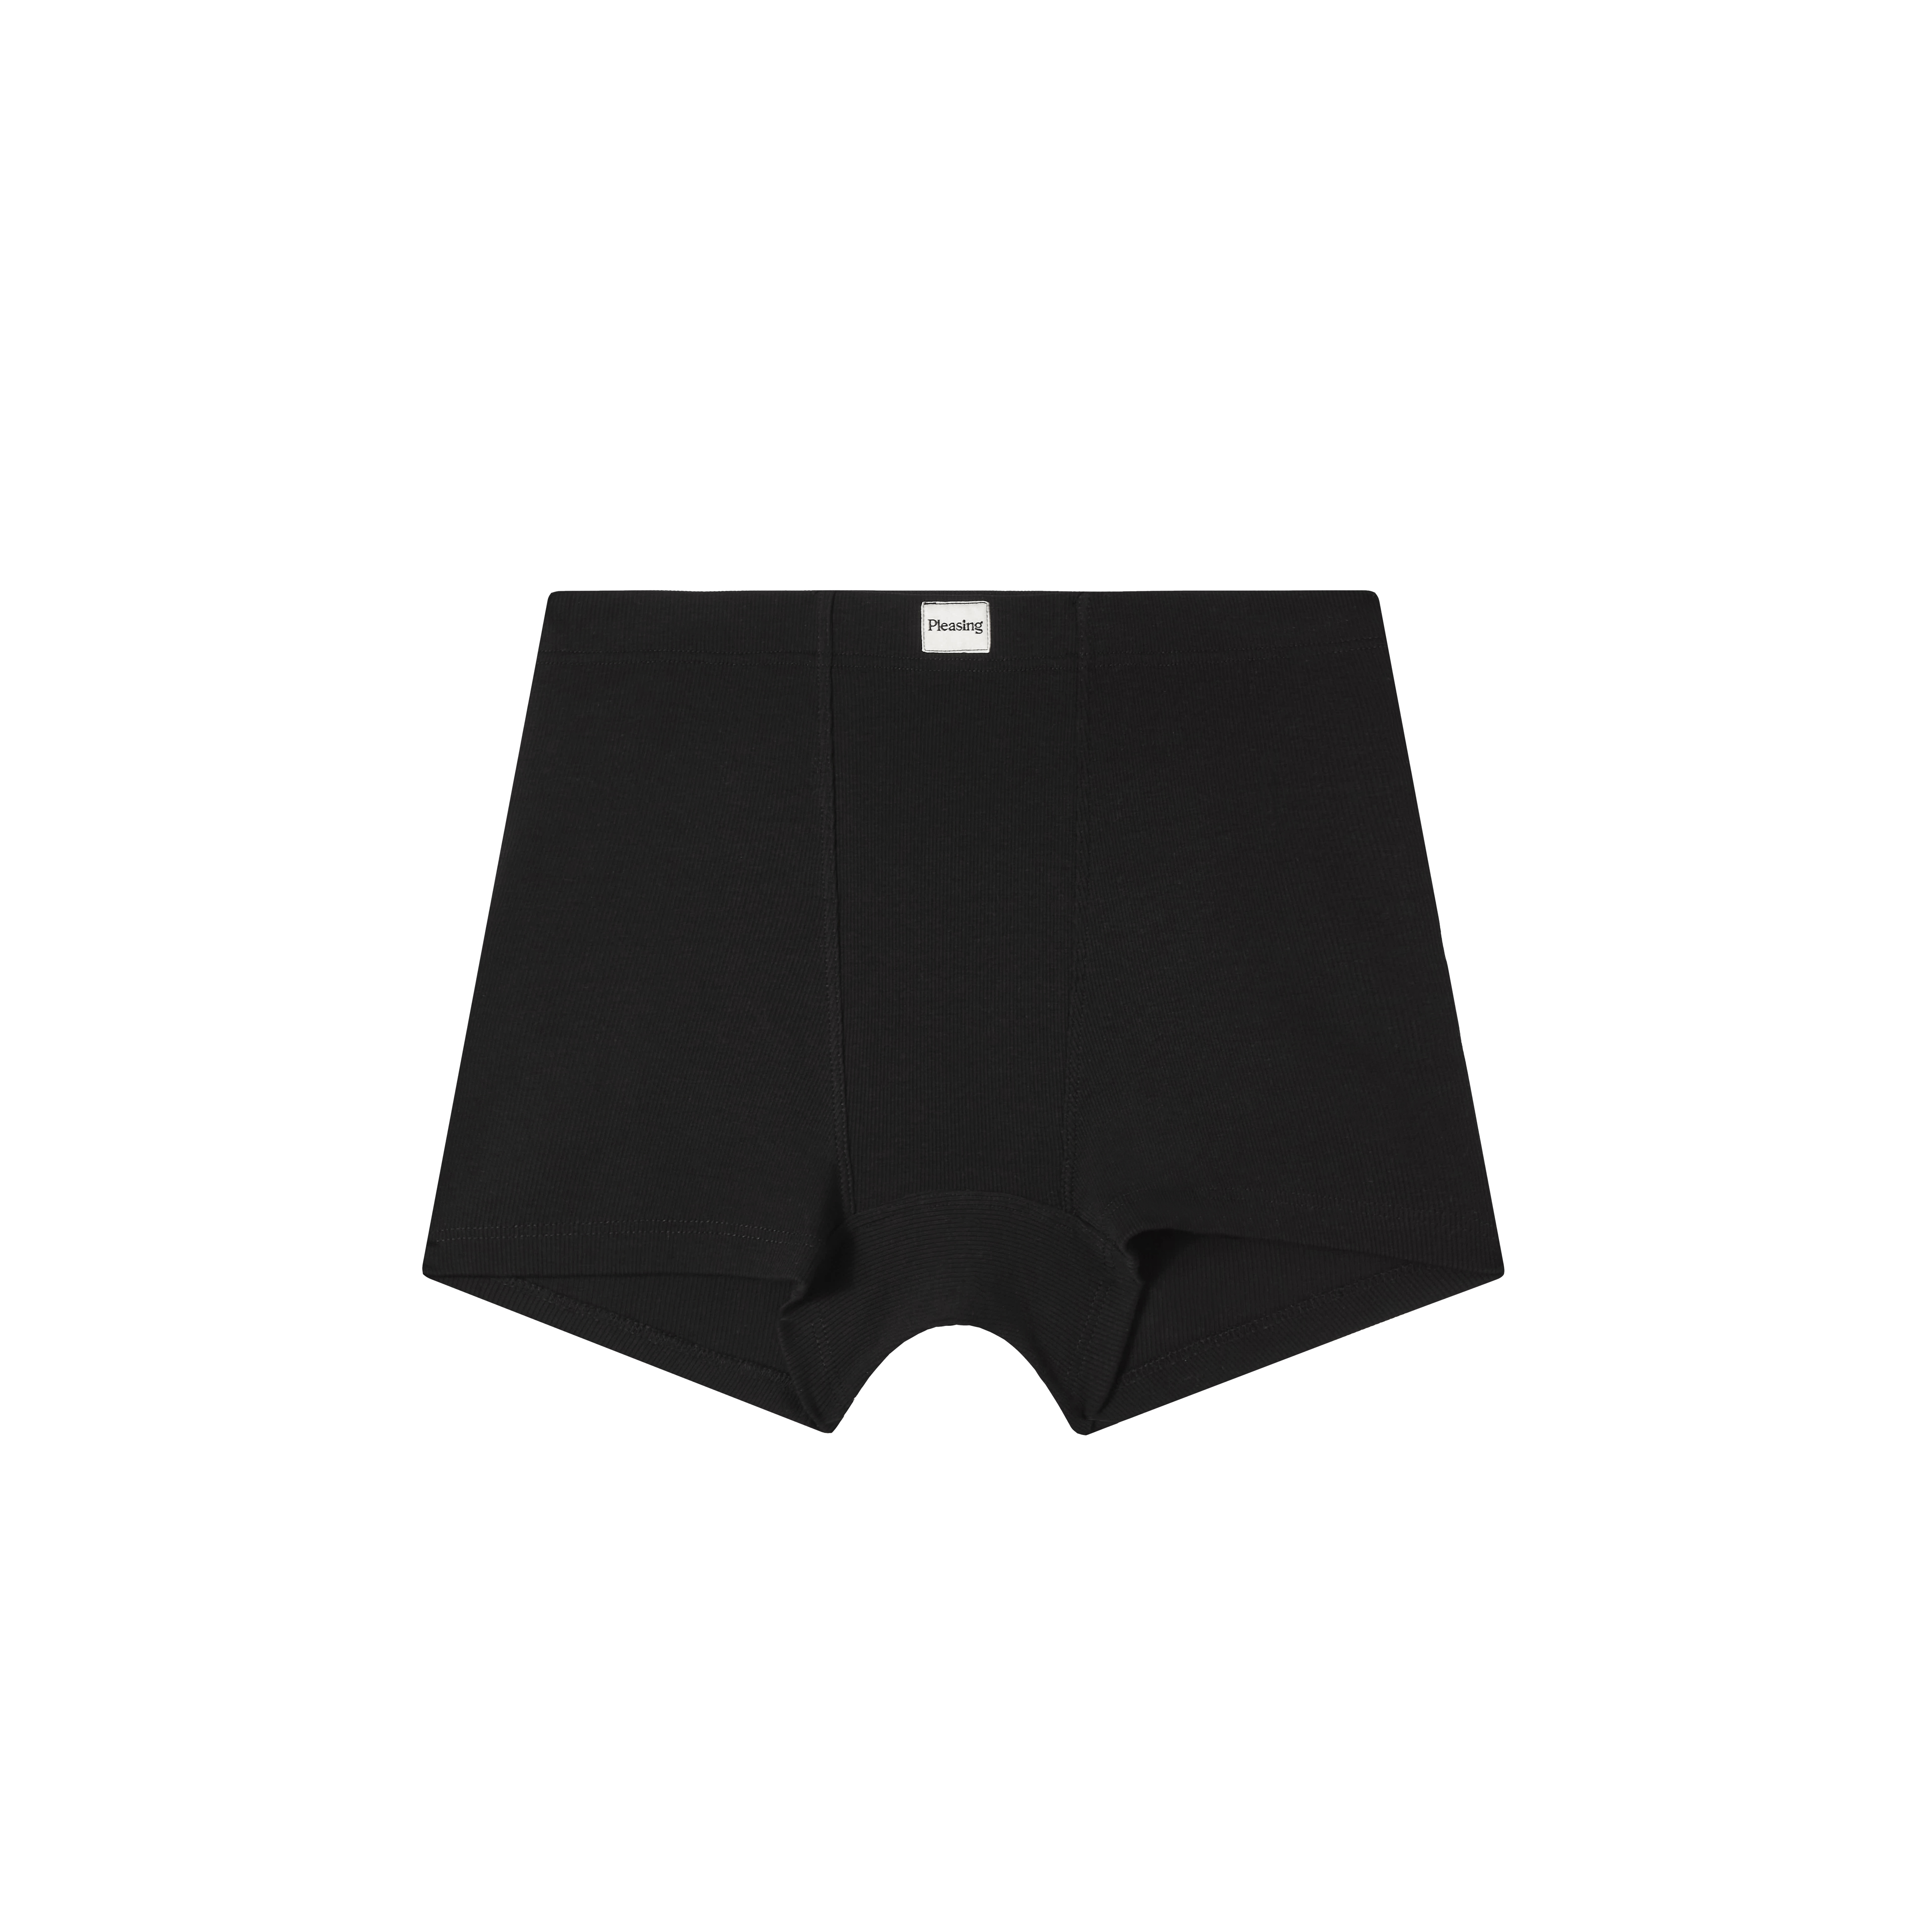 Men's Boxer Briefs Long Sheath Sleeve Underwear Quick Dry Shorts Lingerie